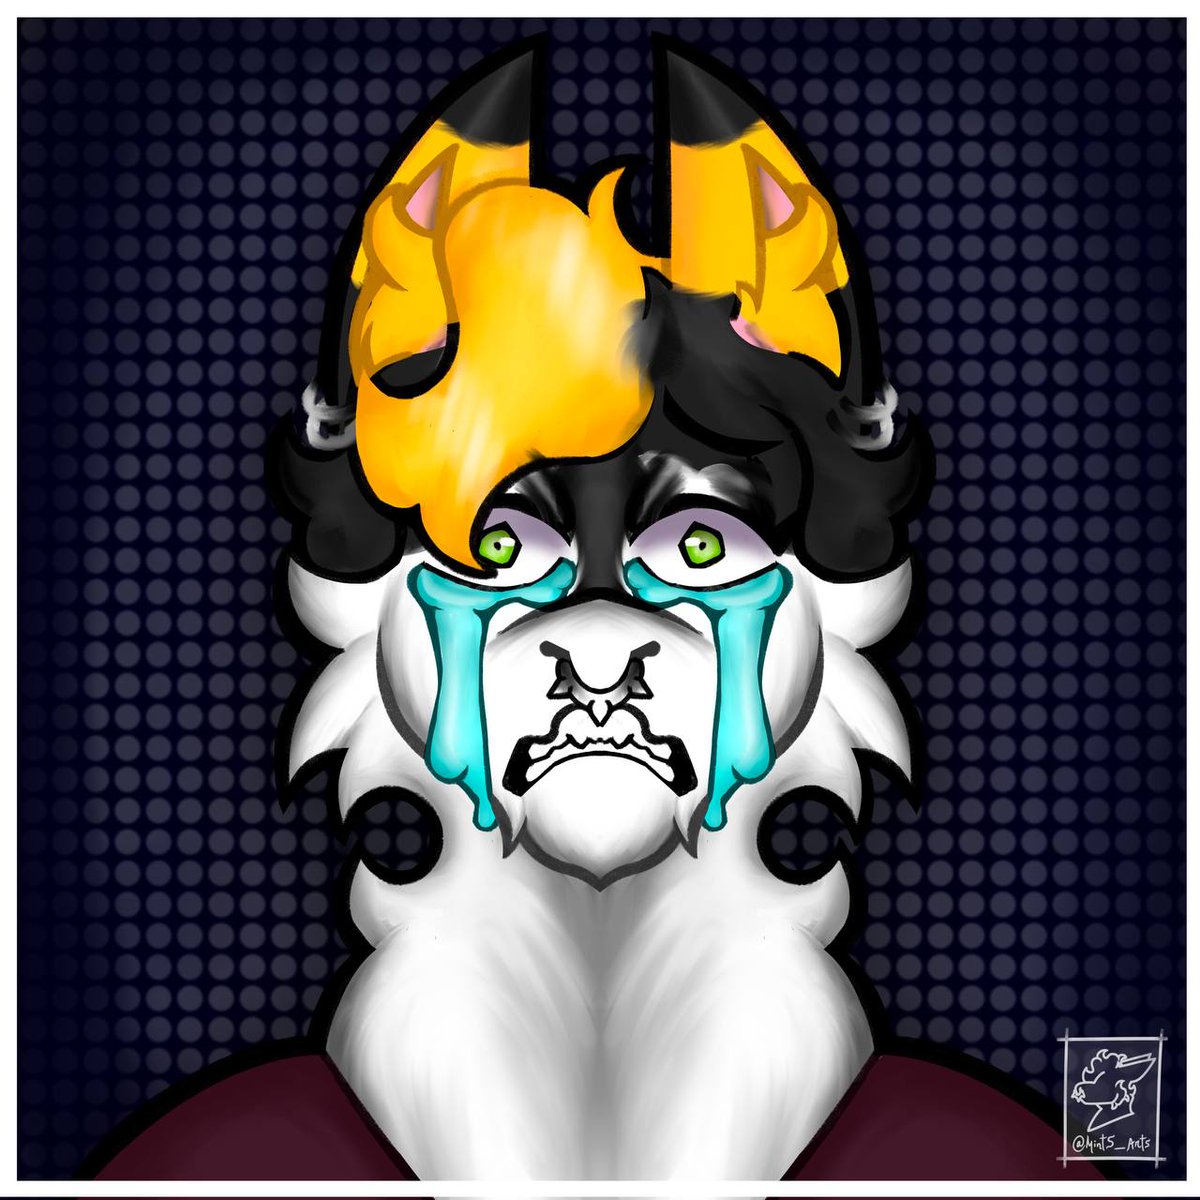 (2/4)
Sad boy 
#furry #sergal #OMORIFANART